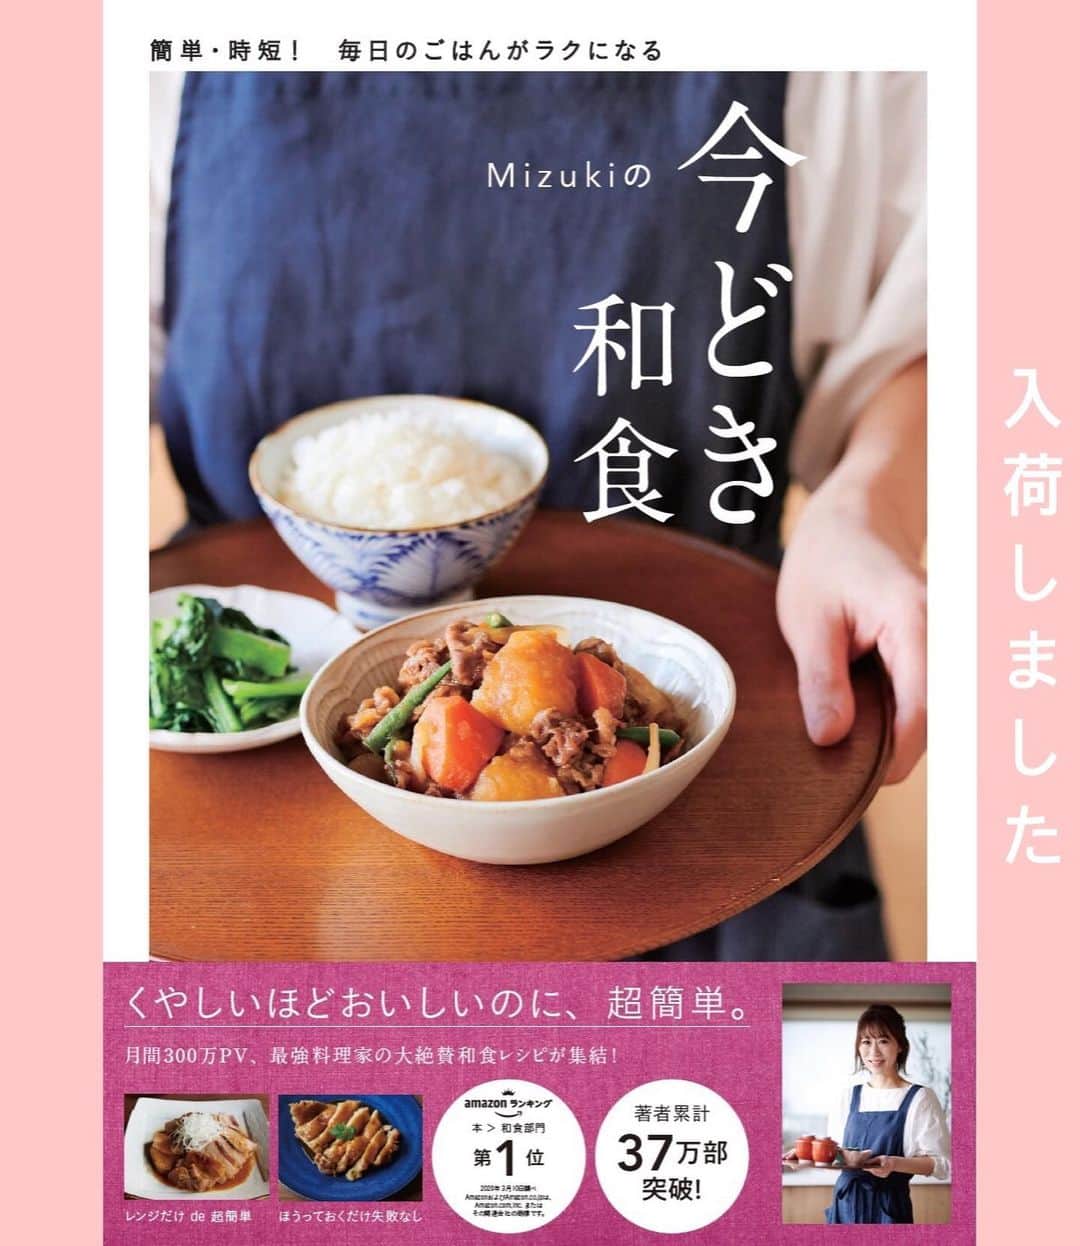 Mizuki【料理ブロガー・簡単レシピ】さんのインスタグラム写真 - (Mizuki【料理ブロガー・簡単レシピ】Instagram)「・﻿ 【レシピ】ーーーーーーーーー﻿ ♡なすの肉味噌レタス包み♡﻿ ーーーーーーーーーーーーーー﻿ ﻿ ﻿ おはようございます(*^^*)﻿ ﻿ 今日ご紹介させていただくのは﻿ 肉味噌のレタス包み♩﻿ 甘辛く味付けした肉味噌と﻿ シャキシャキのレタスが相性抜群！﻿ いくらでも食べられる美味しさですよ♡﻿ ﻿ 包んで食べるおかずは食卓にも変化が出て◎﻿ とっても簡単にできるので﻿ よかったらお試し下さいね♩﻿ ﻿ これおすすめです(*´艸`)﻿ ﻿ ﻿ ﻿ ーーーーーーーーーーーーーーーーーーーー﻿ 【2人分】﻿ 豚ひき肉...200g﻿ なす...1本﻿ 長ねぎ...1/3本﻿ ごま油...小2﻿ ●味噌・酒・砂糖・醤油...各大1﻿ ●生姜チューブ...3cm﻿ ●片栗粉...小1/4﻿ レタス...1/2個〜﻿ ﻿ 1.なすは1cm角に切り、水に3分晒して水気を切る。長ねぎは粗みじん切りにする。●は合わせておく。﻿ 2.フライパンにごま油を入れて中火で熱し、ひき肉を炒める。色が変わったらなすと長ねぎも加えて更に炒める。なすがしんなりしたら●を加え、とろみが付くまで煮からめる。﻿ 3.レタスを食べやすい大きさにちぎって器に盛り、2を包みながら食べる。﻿ ーーーーーーーーーーーーーーーーーーーー﻿ ﻿ ﻿ ﻿ 《ポイント》﻿ ♦︎ごはんも(好みでマヨネーズも)一緒に包んで食べるのもおすすめです♩﻿ ♦︎完成後に脂が多く残る場合は、フライパンを傾けて拭き取ると◎﻿ ♦︎合挽き肉で作ってもOK♩﻿ ﻿ ﻿ ﻿ ﻿ ﻿ ﻿ ﻿ 🔻入荷しました🔻﻿ ストーリーにリンク貼っています🙇‍♀️﻿ ＿＿＿＿＿＿＿＿＿＿＿＿＿＿＿＿＿＿＿﻿ 📕\ \ 新刊発売中 / /📕﻿ 簡単・時短！ 毎日のごはんがラクになる﻿ ✨🦋 【 #Mizukiの今どき和食 】🦋✨﻿ ＿＿＿＿＿＿＿＿＿＿＿＿＿＿＿＿＿＿＿﻿ ﻿ なるべく少ない材料で﻿ 手間も時間も省きながら﻿ 簡単にできるおいしい和食レシピ♩﻿ 簡単に失敗なくマスターできる一冊で﻿ もっと気軽に、カジュアルに﻿ 和食を楽しんで下さいね(*^^*)﻿ ﻿ ﻿ ーーー ⭐️PART.1 メインおかず ⭐️ーーー﻿ 素材別にレシピをご紹介しています♩﻿ 和食の定番から新定番まで﻿ どれも押さえておきたいメニューばかり。﻿ 肉じゃがはフライパンで！焼き豚はレンジで！﻿ ぶり大根は切り身を使って手軽に作ります♩﻿ ﻿ ーーー ☘️PART.2 サブおかず ☘️ーーー﻿ 年中手に入るお手頃野菜と﻿ 乾物や大豆、こんにゃくなどを使った﻿ 副菜レシピをたっぷり掲載！！﻿ 普段SNSではメインおかずばかりなので﻿ 本では副菜にも力を入れています(*^^*)﻿ ﻿ ーーー 🌸PART.3 ごはんと汁物 🌸ーーー﻿ ささっと作れる丼と麺、﻿ みんなで食べたいいなり寿司や﻿ 手巻きごはんもご紹介！﻿ 複数の炊き込みごはんと﻿ 味噌汁&和風スープも盛りだくさん！﻿ ﻿ ﻿ 各レシピのポイントは﻿ 【写真付きで丁寧に解説】﻿ 副菜レシピもたっぷりなので﻿ 【メインページに副菜メモもつけました】﻿ ＊このメインにはこの副菜が合いますよ〜﻿ という献立の提案です(*^^*)﻿ 【その他コラムも充実】﻿ 全127品中ほぼ全て﻿ 【本だけのレシピです！】﻿ ﻿ ＿＿＿＿＿＿＿＿＿＿＿＿＿＿＿＿＿＿＿﻿ ﻿ ﻿ ﻿ ﻿ ﻿ ﻿ ＿＿＿＿＿＿＿＿＿＿＿＿＿＿＿＿＿﻿ 🎀発売中🎀﻿ 【#ホットケーキミックスのお菓子 】﻿ ﻿ 一冊まるっとホケミスイーツ♩﻿ 普段のおやつから﻿ 特別な日にも使えるレシピを﻿ この一冊に詰め込みました(*^^*)﻿ ホットケーキミックスを使えば﻿ 簡単に本格的なお菓子が作れますよ♡﻿ ＿＿＿＿＿＿＿＿＿＿＿＿＿＿＿＿＿﻿ ﻿ ⭐️ストーリー、ハイライト、プロフ画面に﻿ 本のURLを貼らせていただいております♩﻿ →(@mizuki_31cafe )﻿ ﻿ ﻿ ﻿ ﻿ ﻿ #肉味噌#なす#ひき肉#レタス#レタス包み#うちで過ごそう#おうち時間#Mizuki#簡単レシピ#時短レシピ#節約レシピ#料理#レシピ#フーディーテーブル#マカロニメイト#おうちごはん#おうちカフェ#デリスタグラマー#料理好きな人と繋がりたい#おうちごはんlover#foodpic#follow#cooking#recipe#lin_stagrammer#stayhome#なすの肉味噌レタス包みm」5月16日 8時20分 - mizuki_31cafe